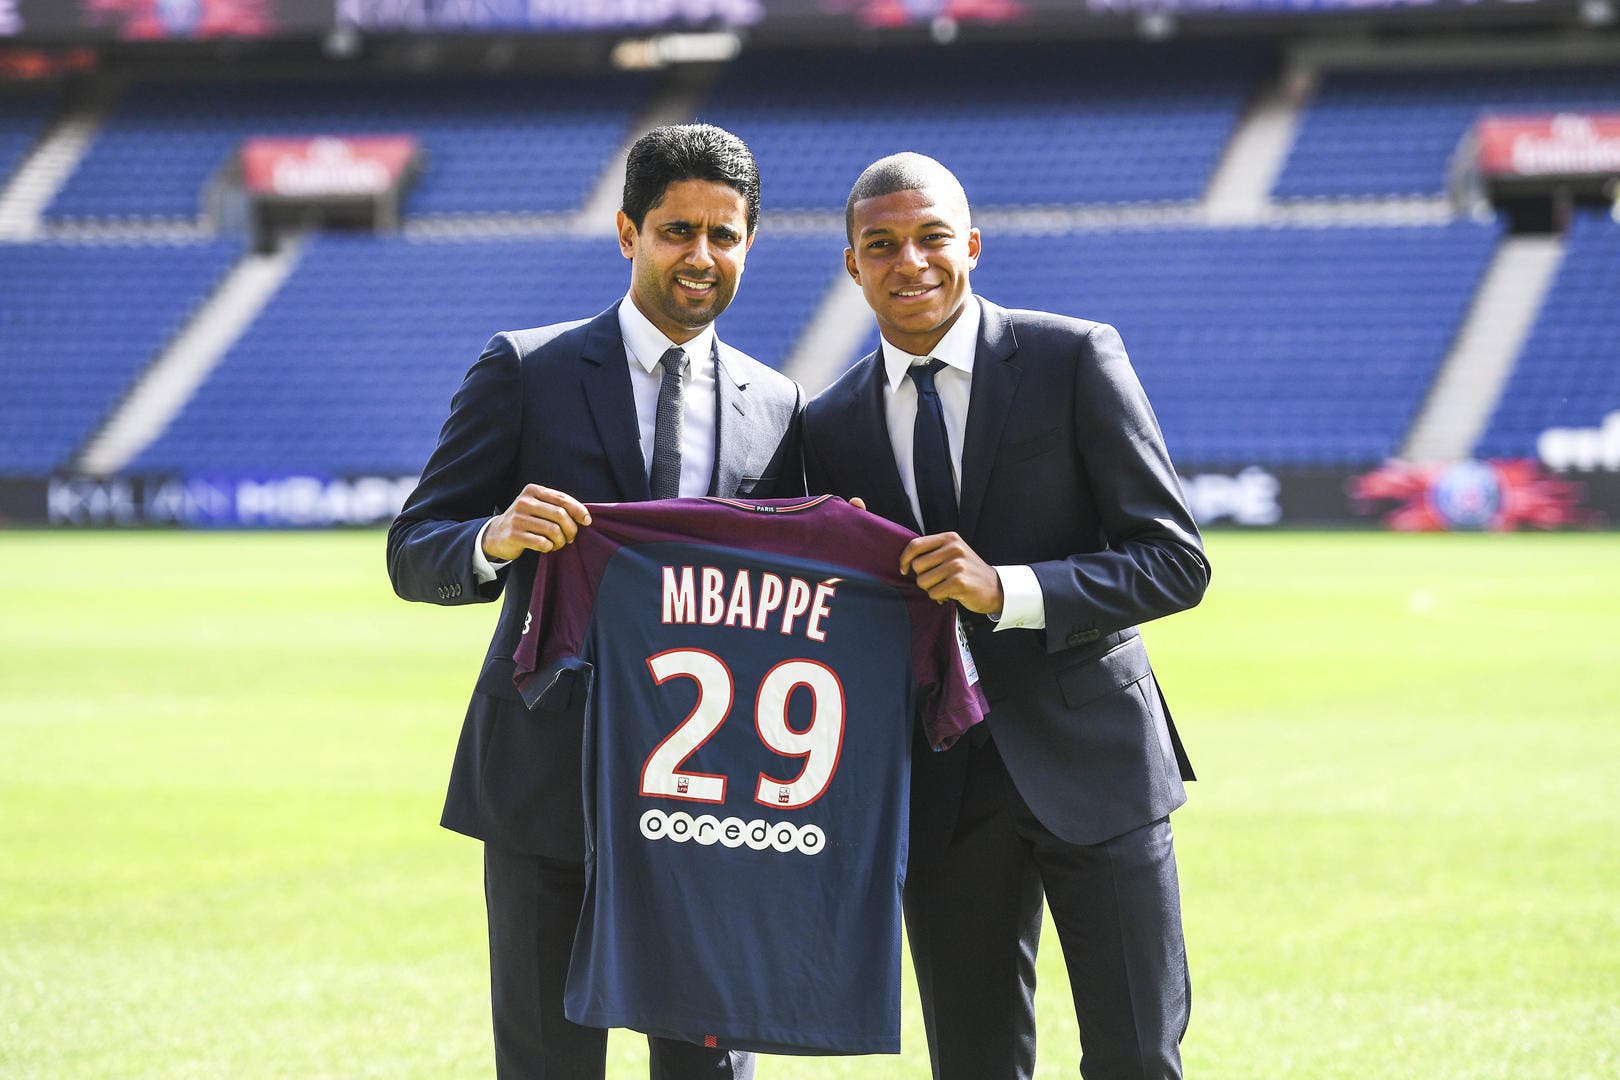 Mbappé 2022, Paris A Le Secret Pour Le Prolonger !